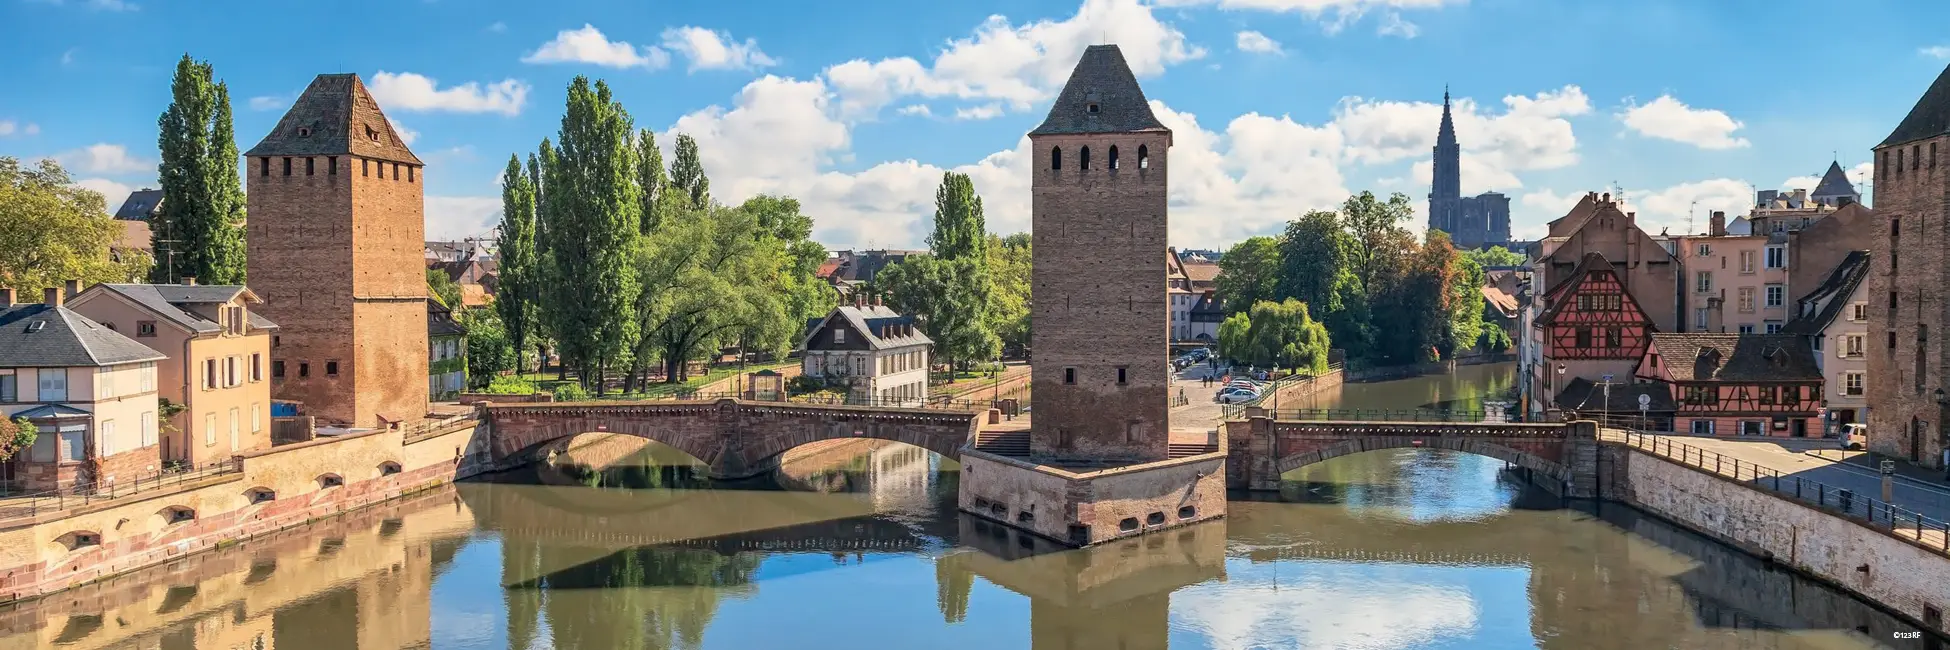 Ponts Couverts de Strasbourg